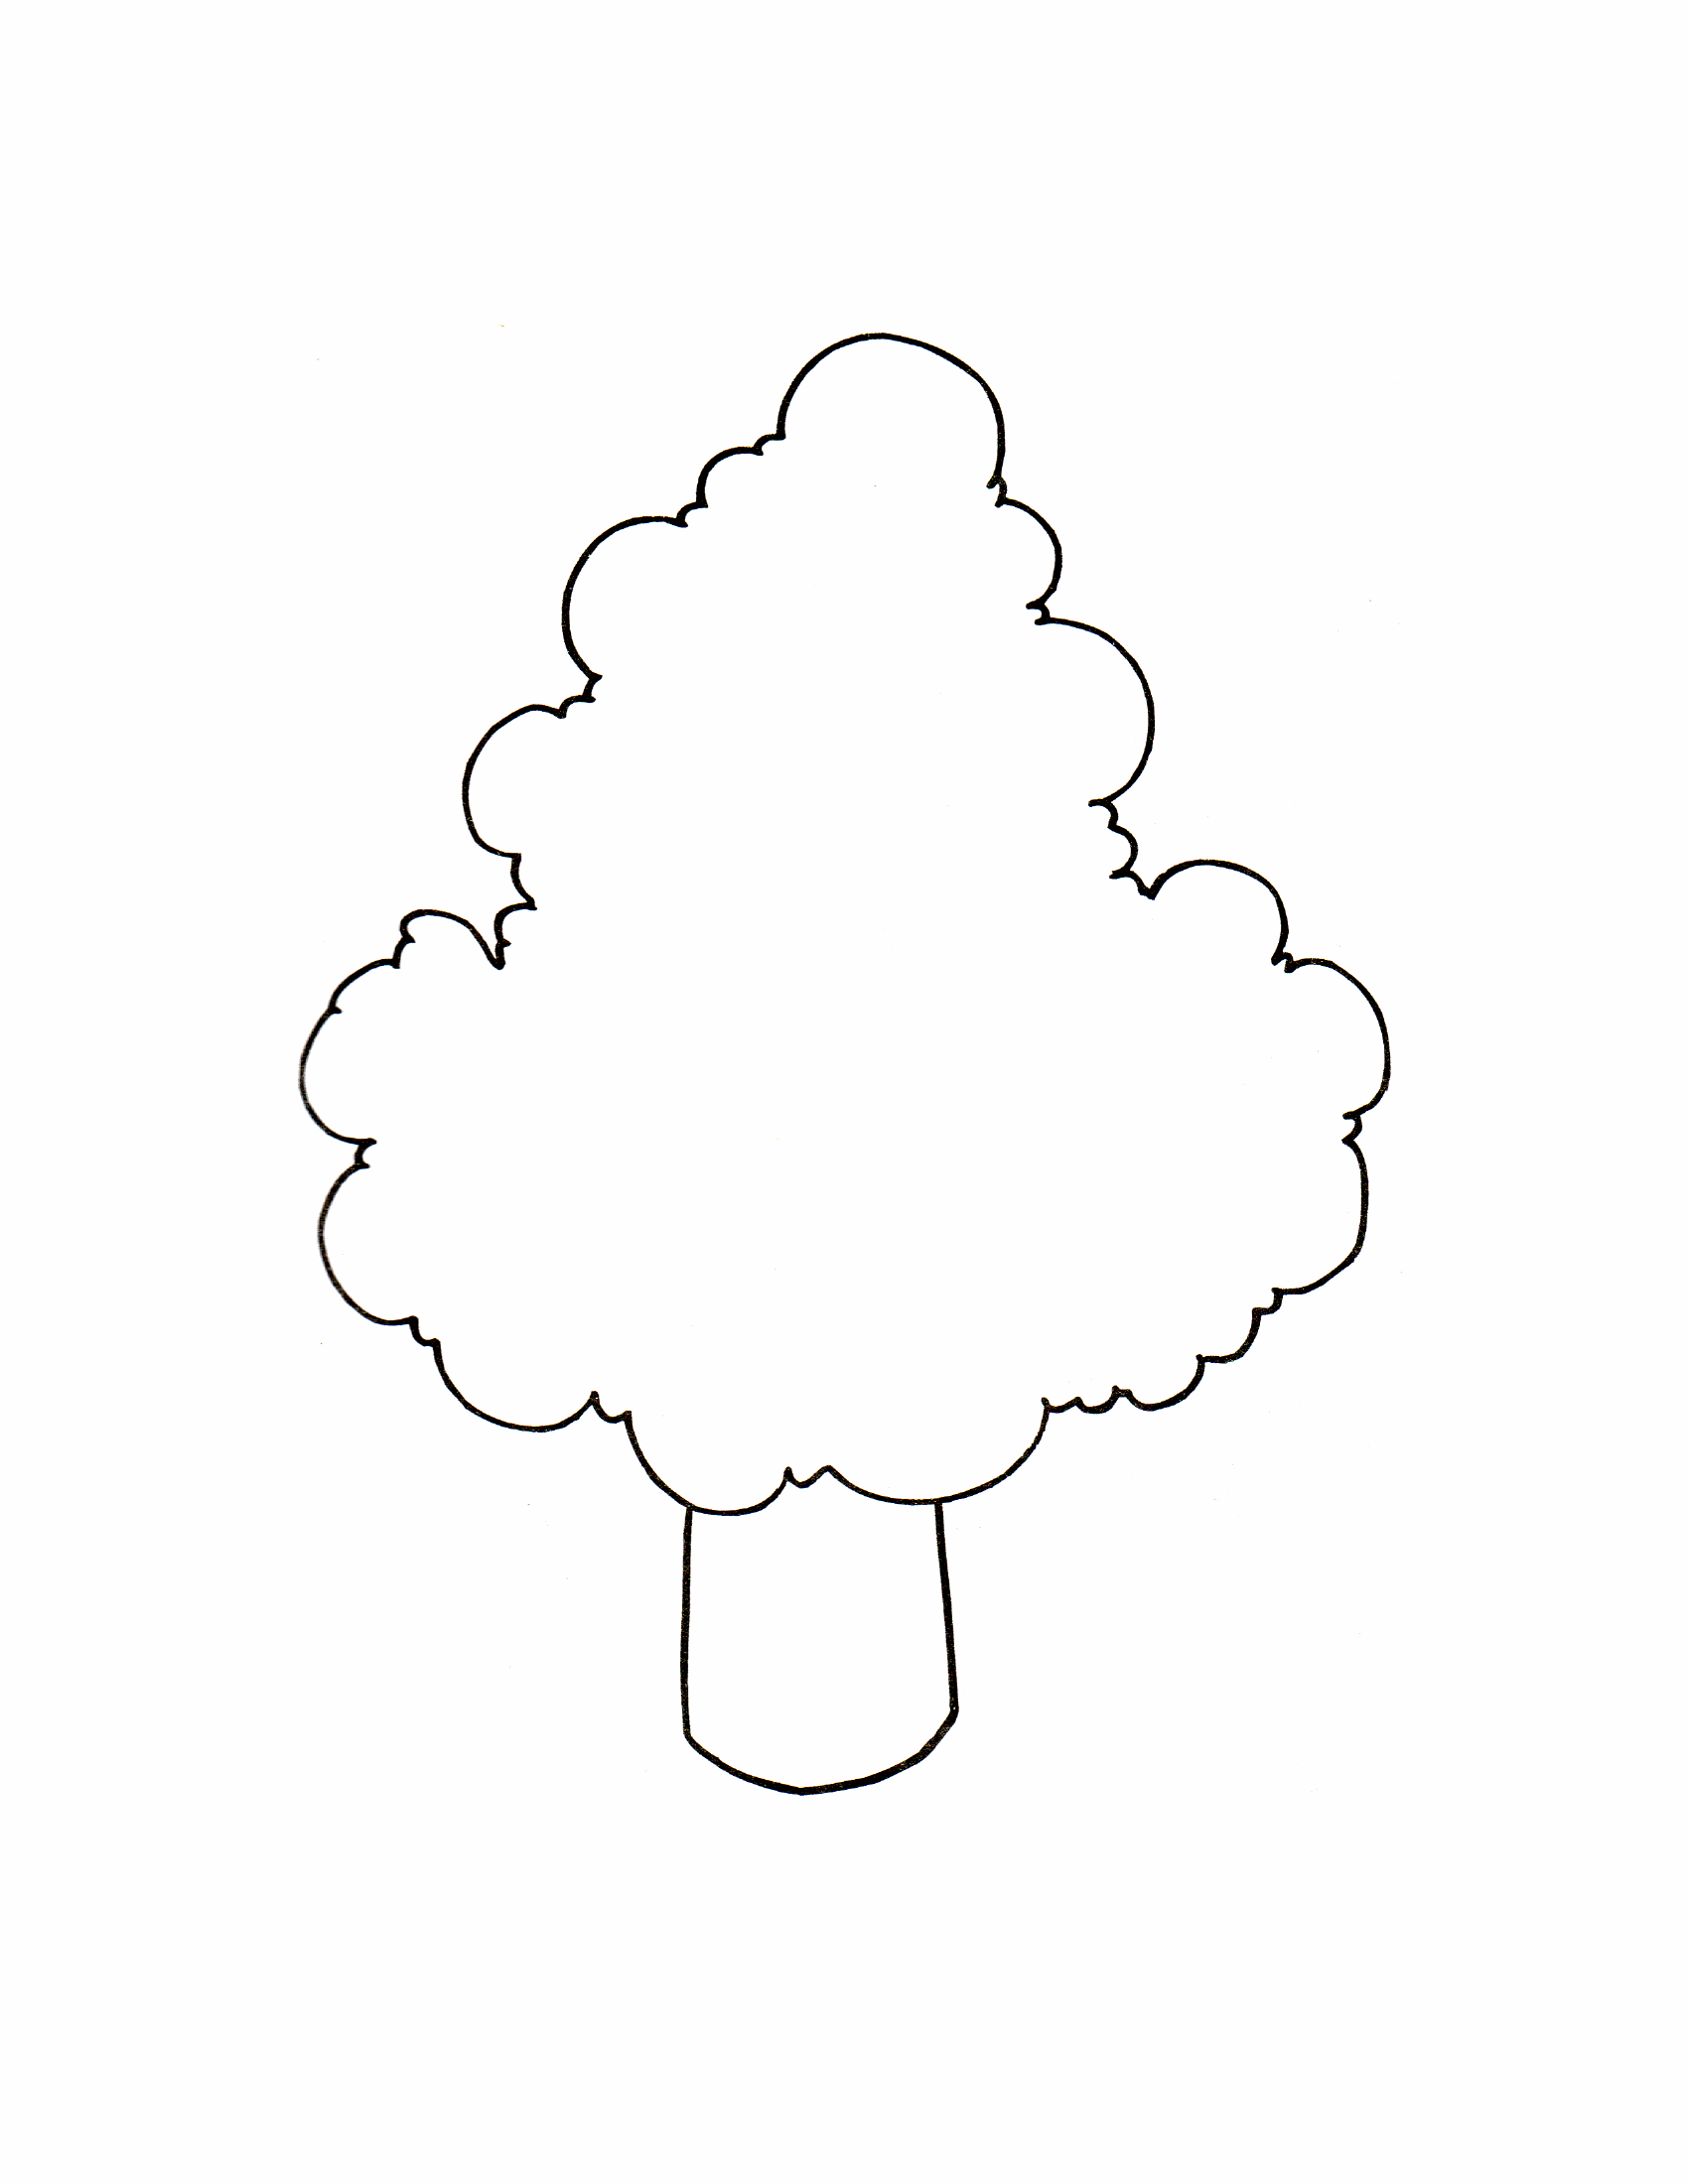 Раскраска дерево для самых маленьких